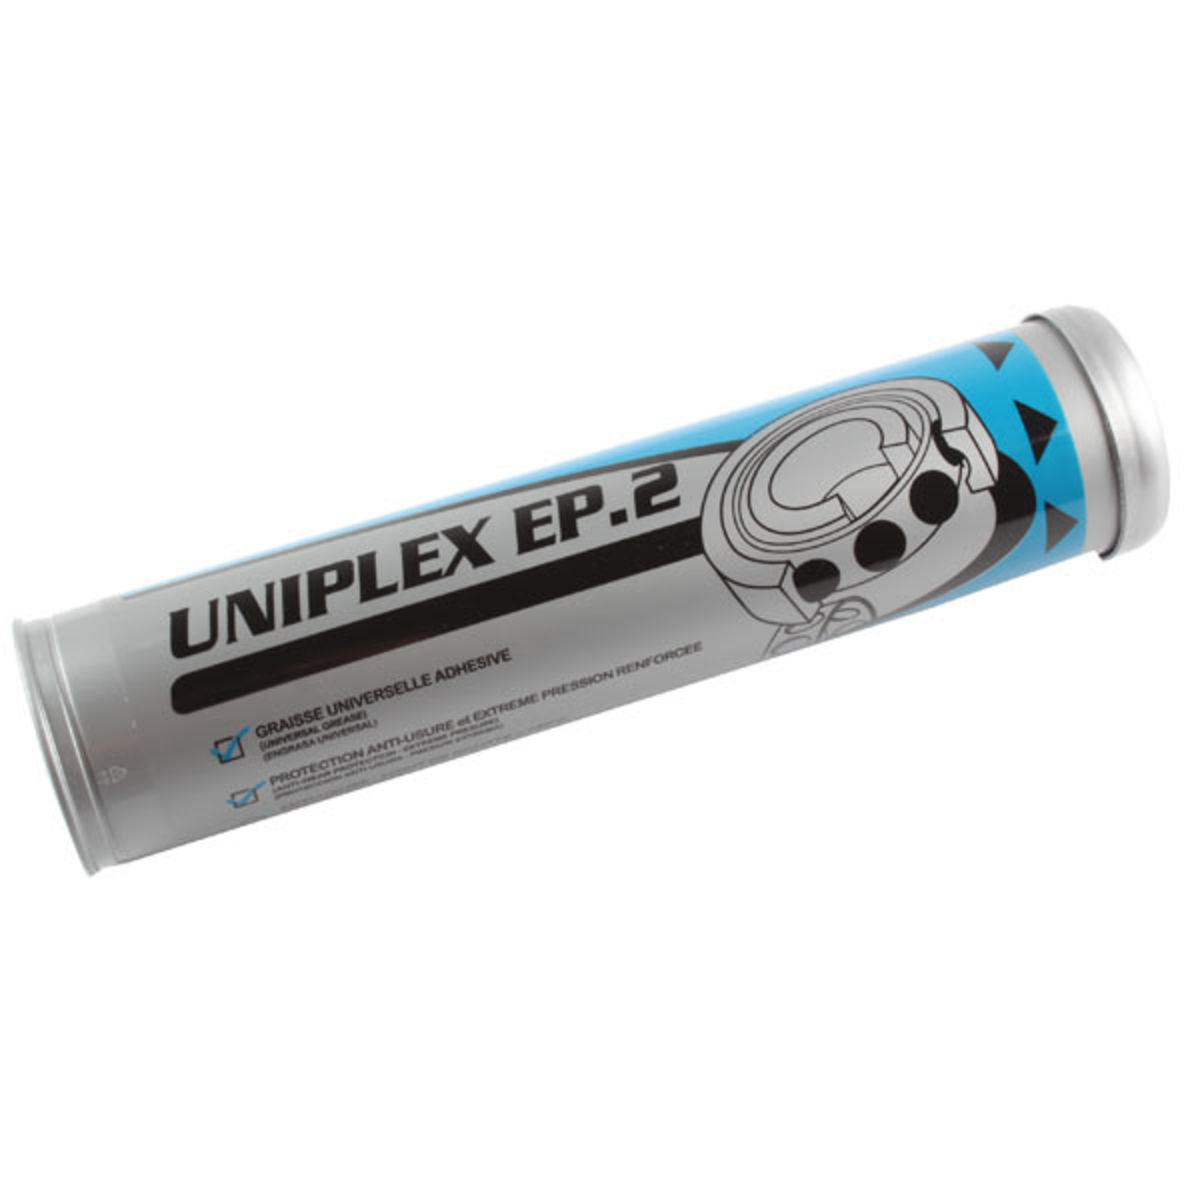 Graisse lithium multifonctionnelle extrême pression UNIL OPAL EPR 2 -  cartouche - 400g - VH27310 unil_opal 